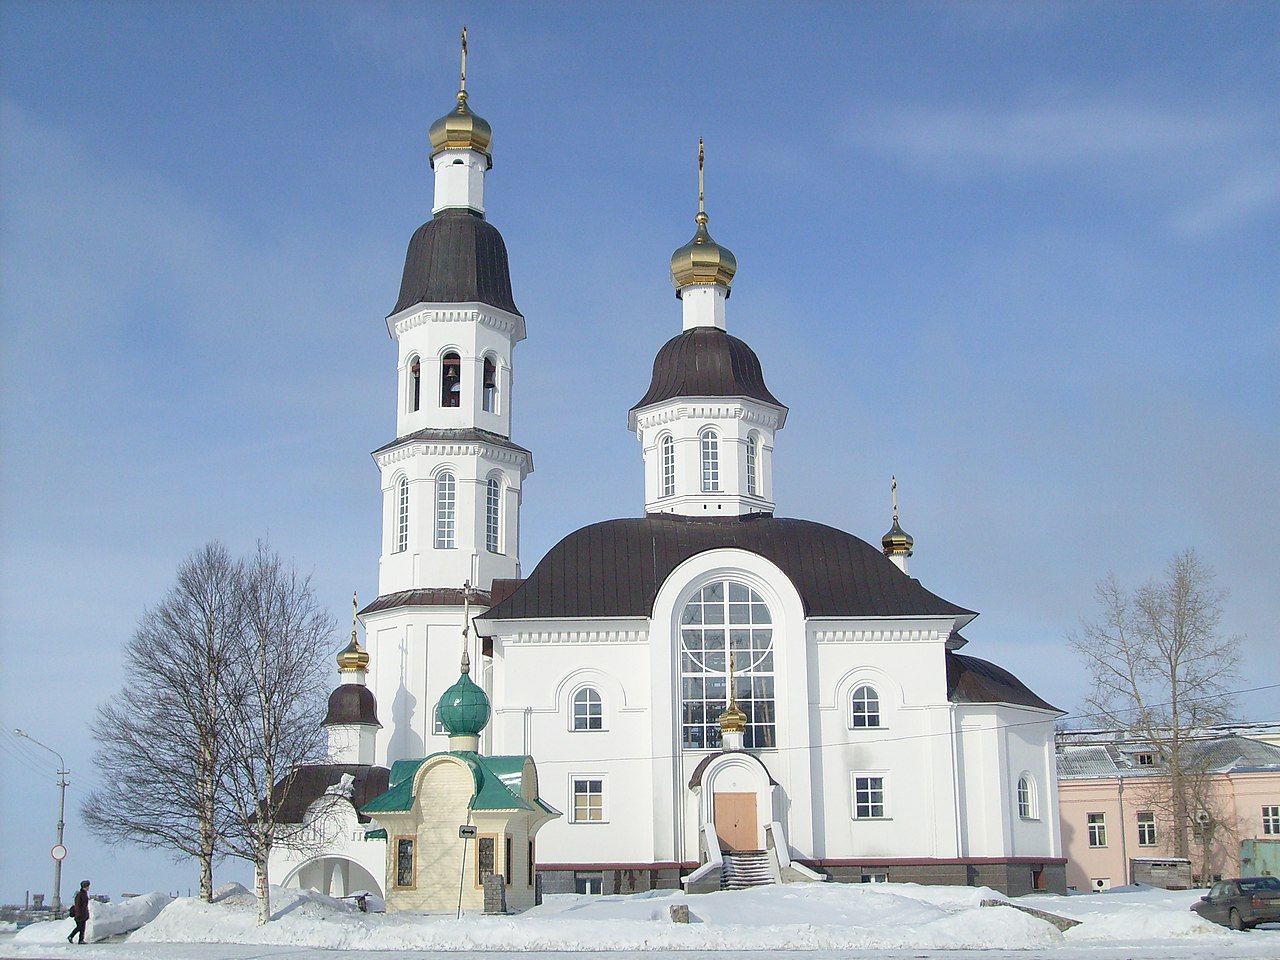 File:Uspenskaya church Arkhangelsk.jpg - Wikimedia Commons
